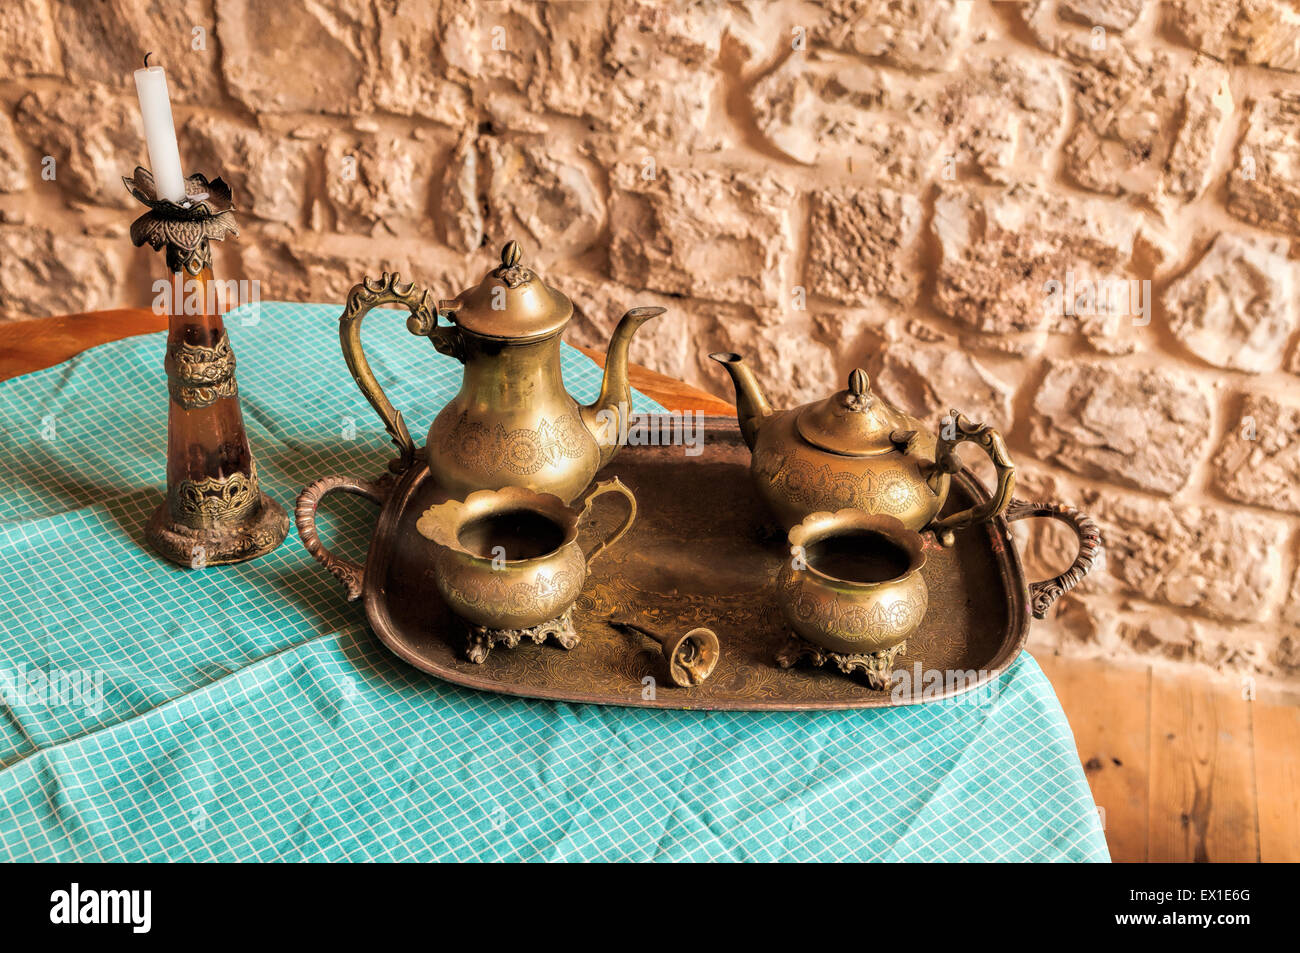 Dinnerset Gerichte für Kaffee und Tee aus die alte Bronzeglocke auf das Tablett mit dem Aufruf für Arbeitnehmer Stockfoto